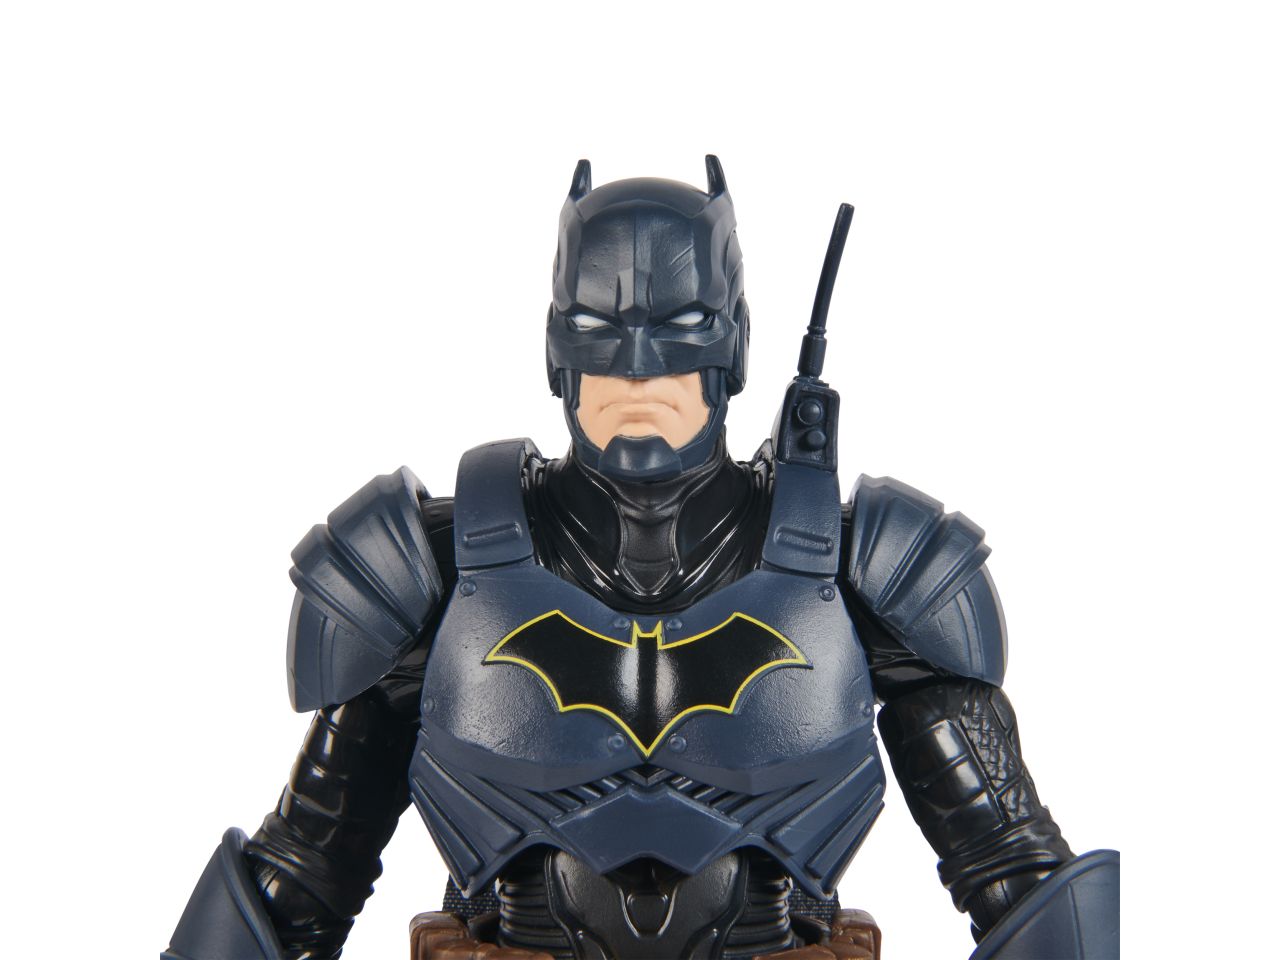 Batman adventures personaggio batman in scala 30cm con accessori